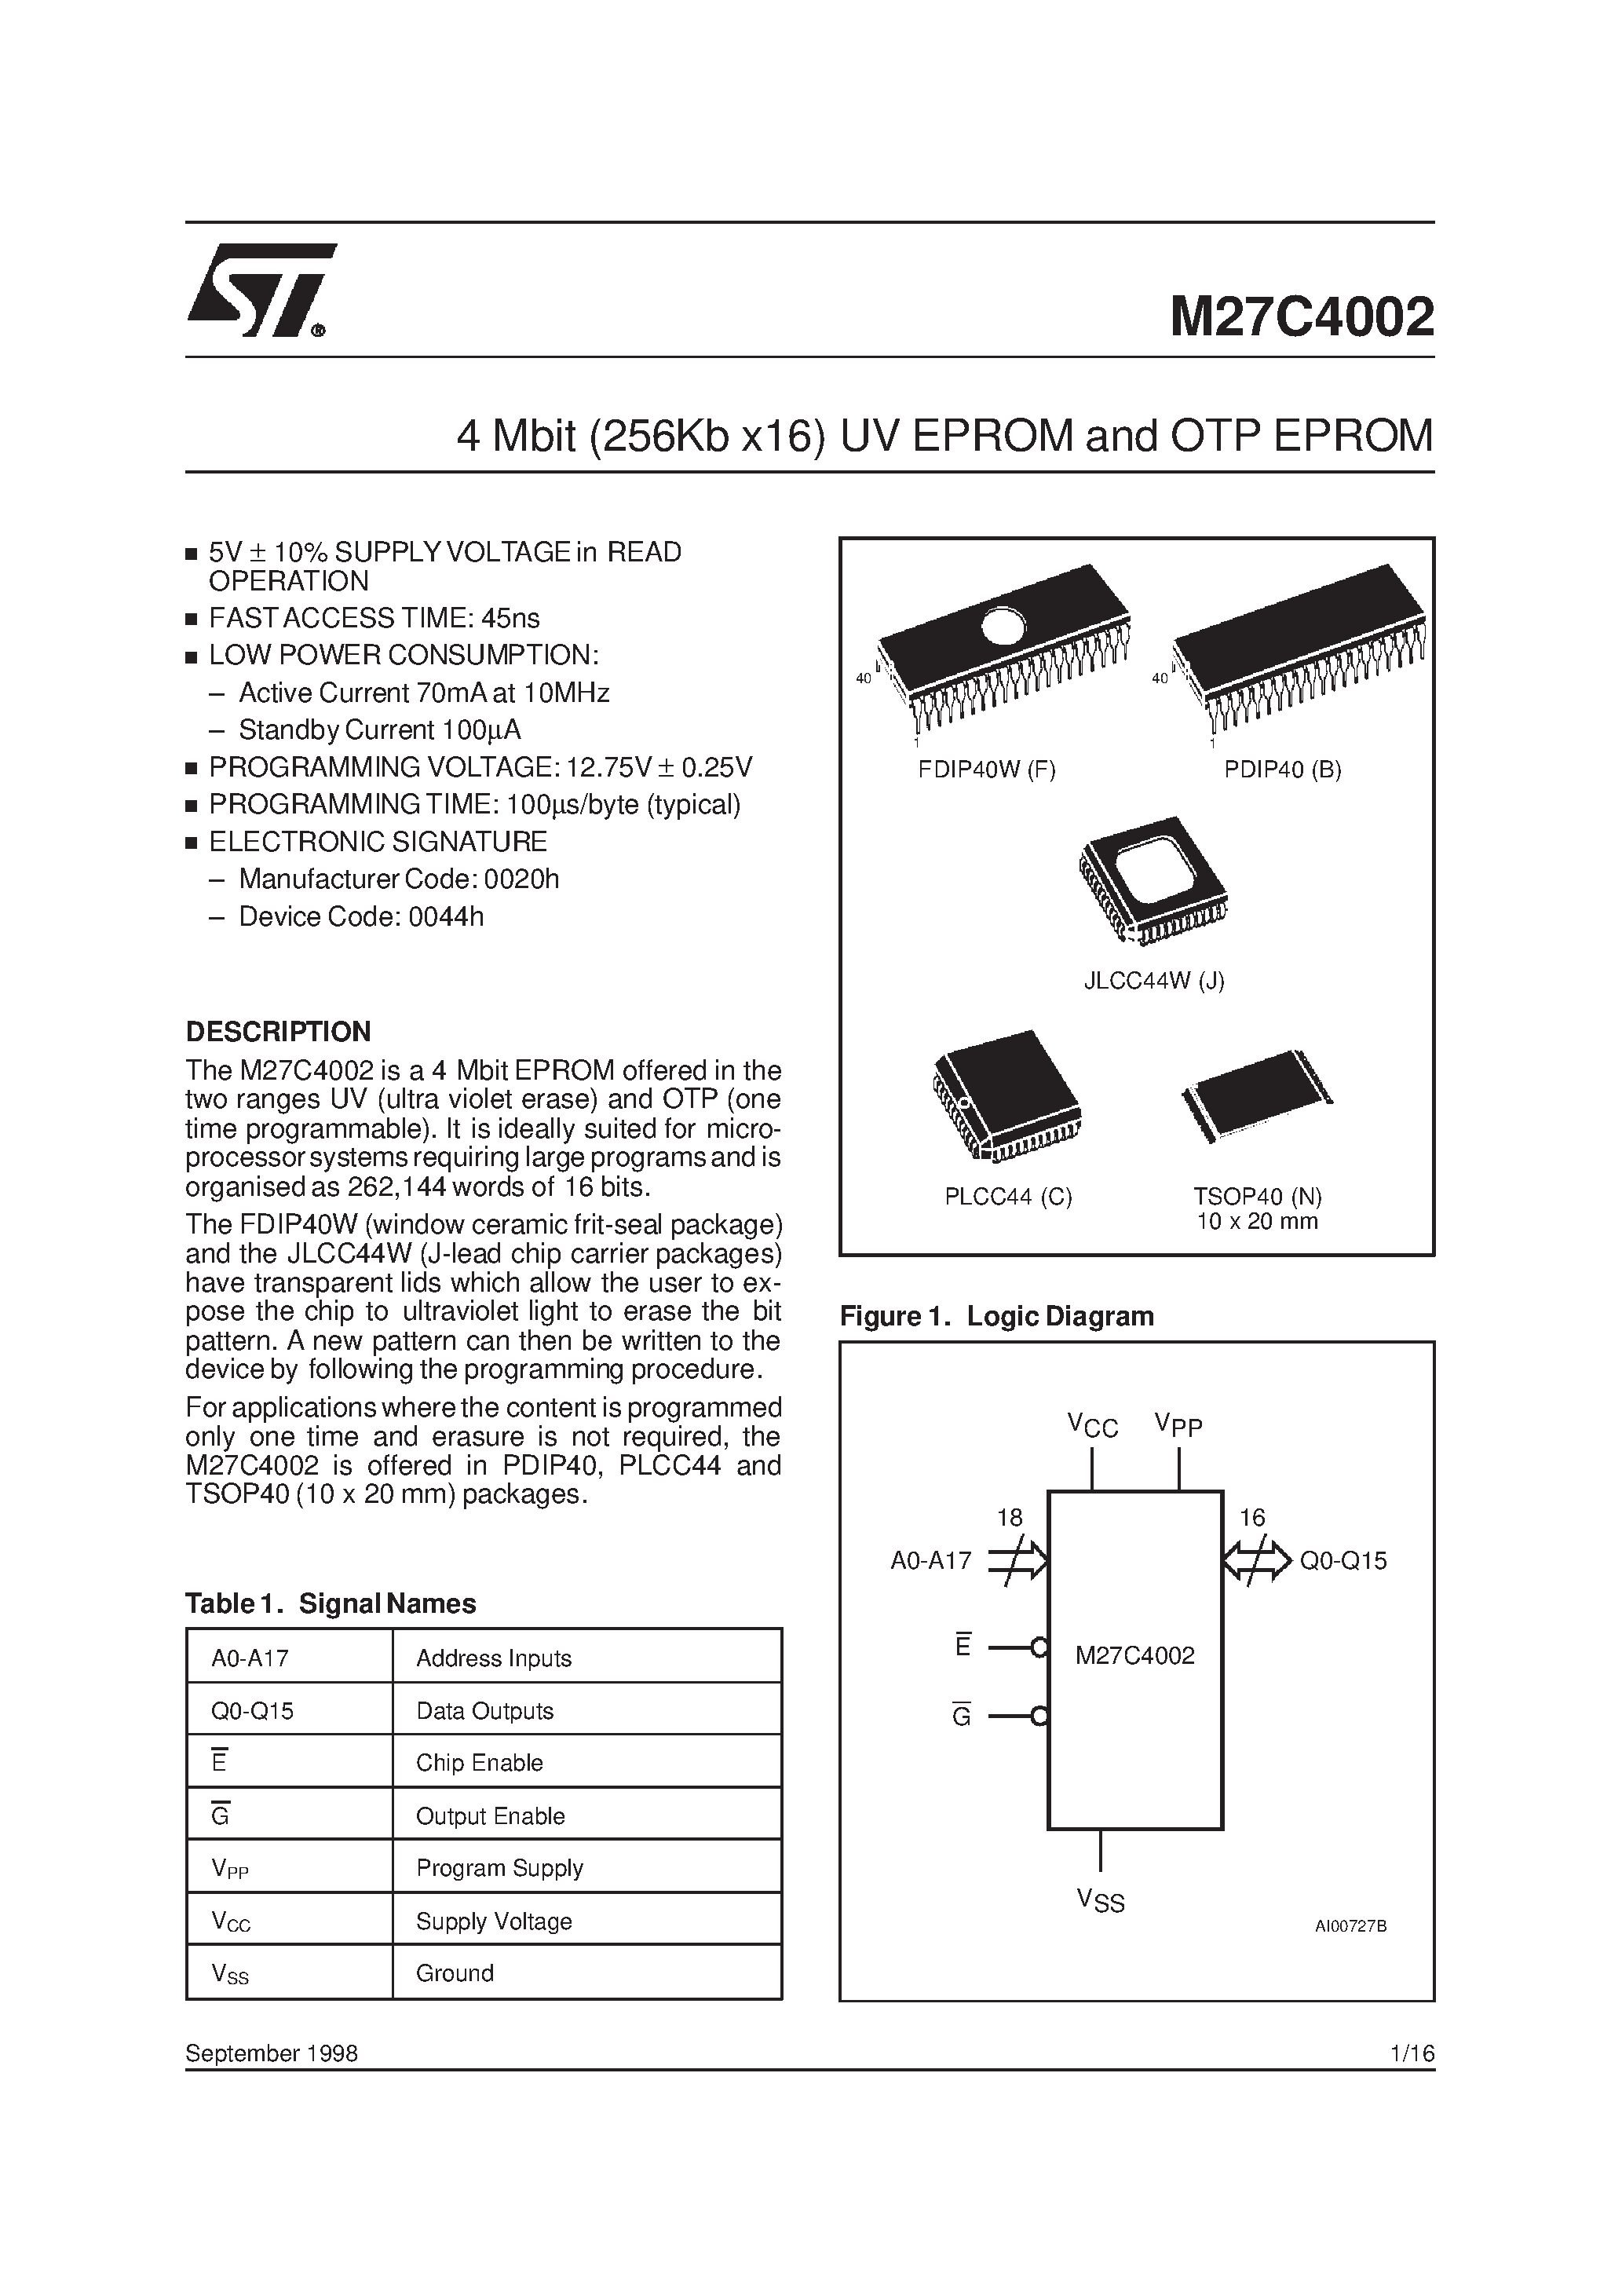 Datasheet M27C4002-12B1X - 4 Mbit 256Kb x16 UV EPROM and OTP EPROM page 1